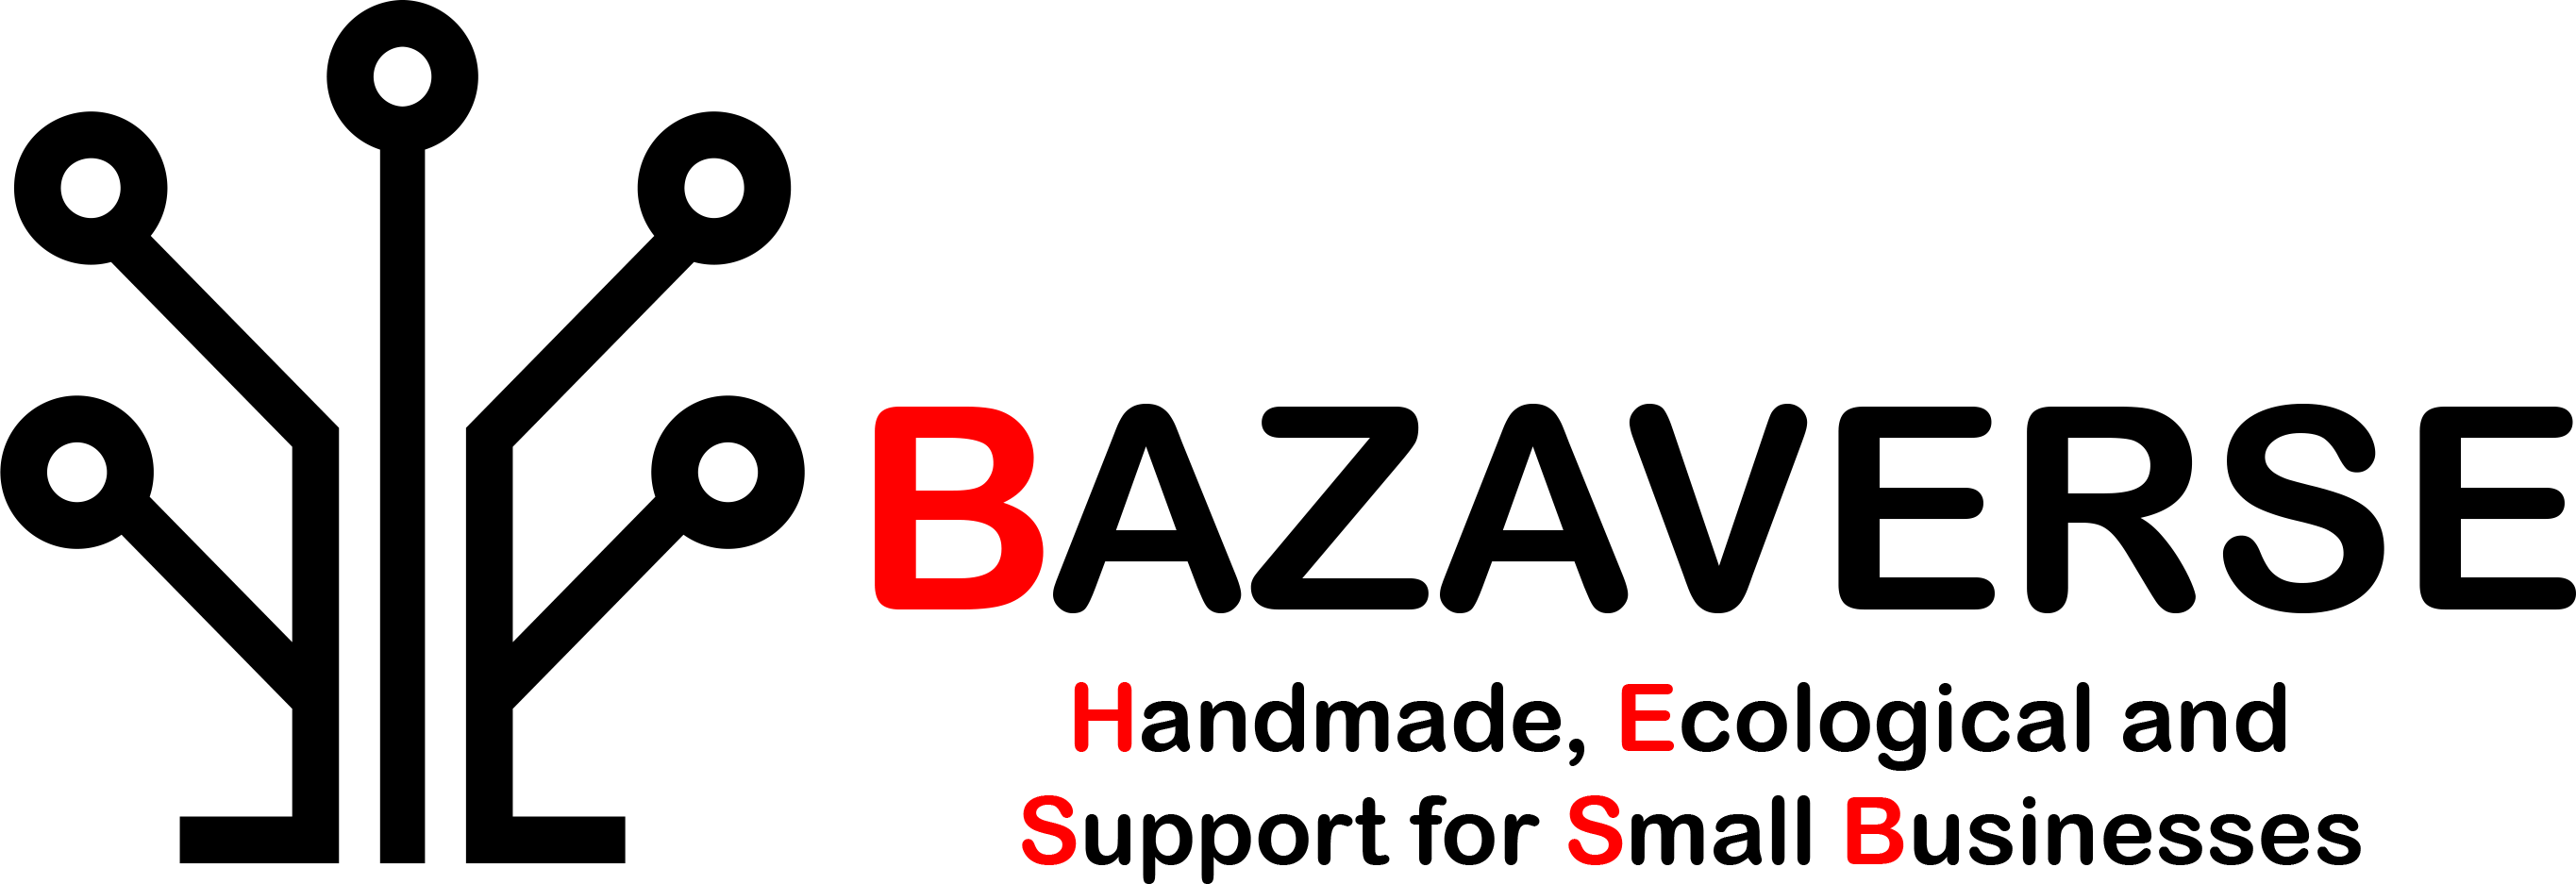 bazaverse logo